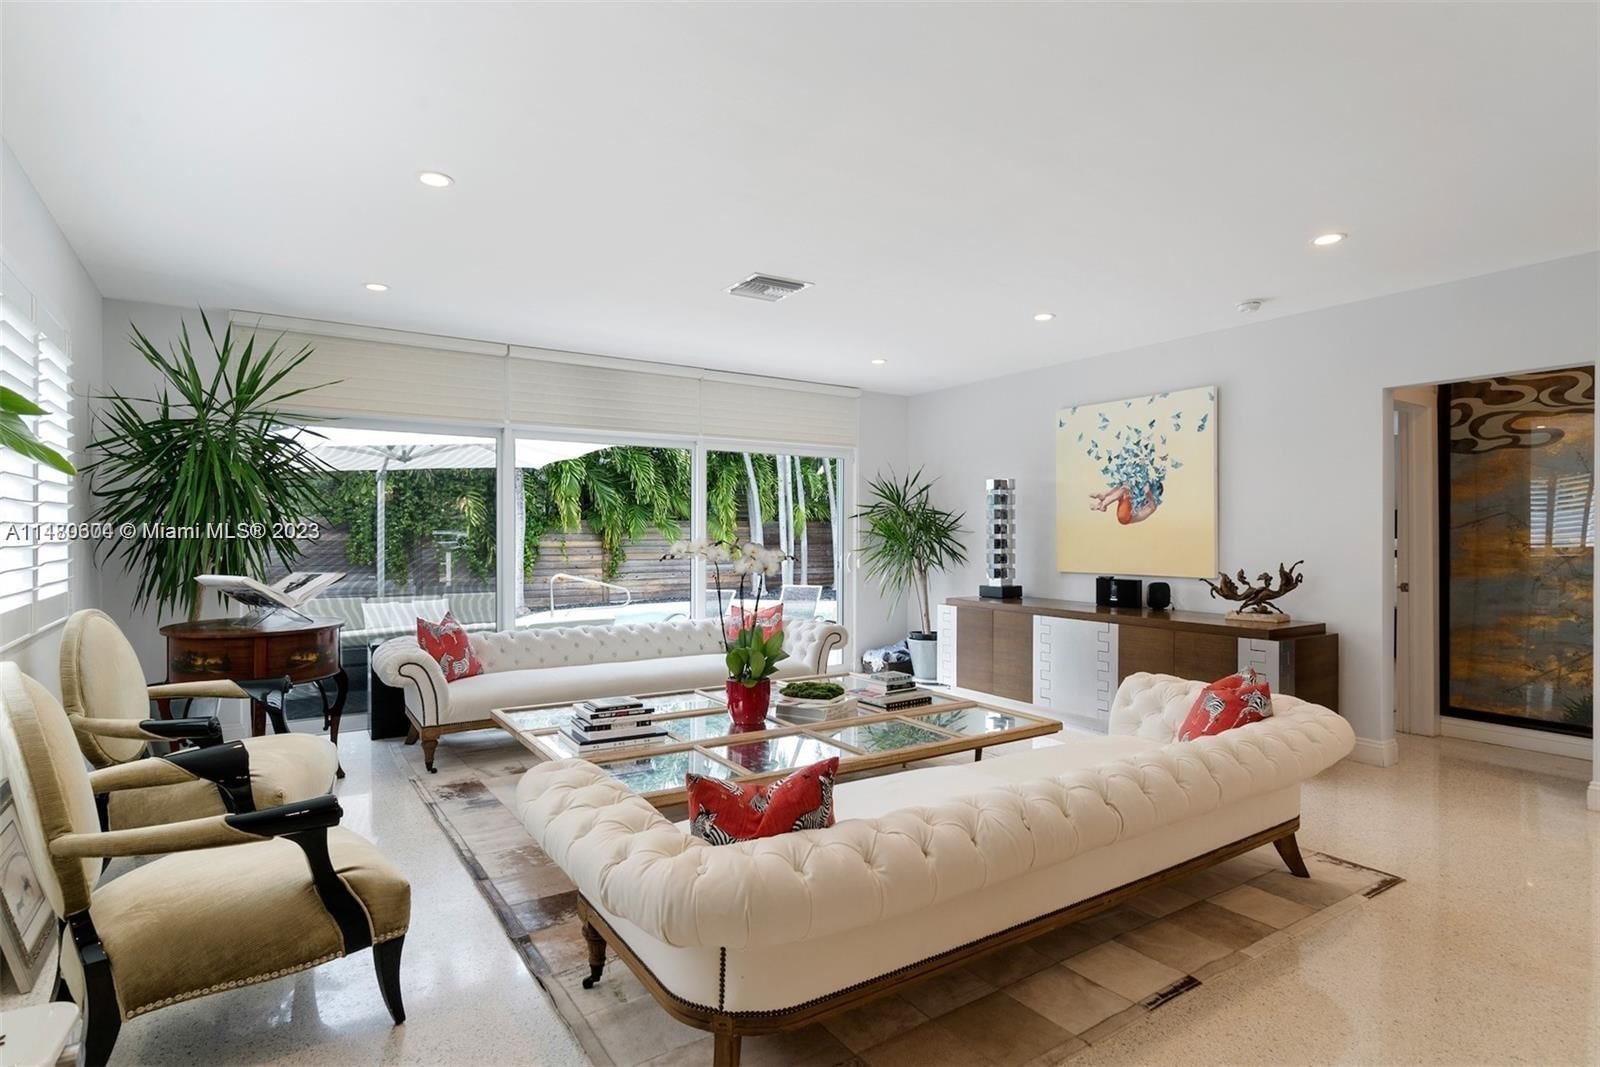 Real estate property located at 5250 Alton Rd, Miami-Dade County, Miami Beach, FL